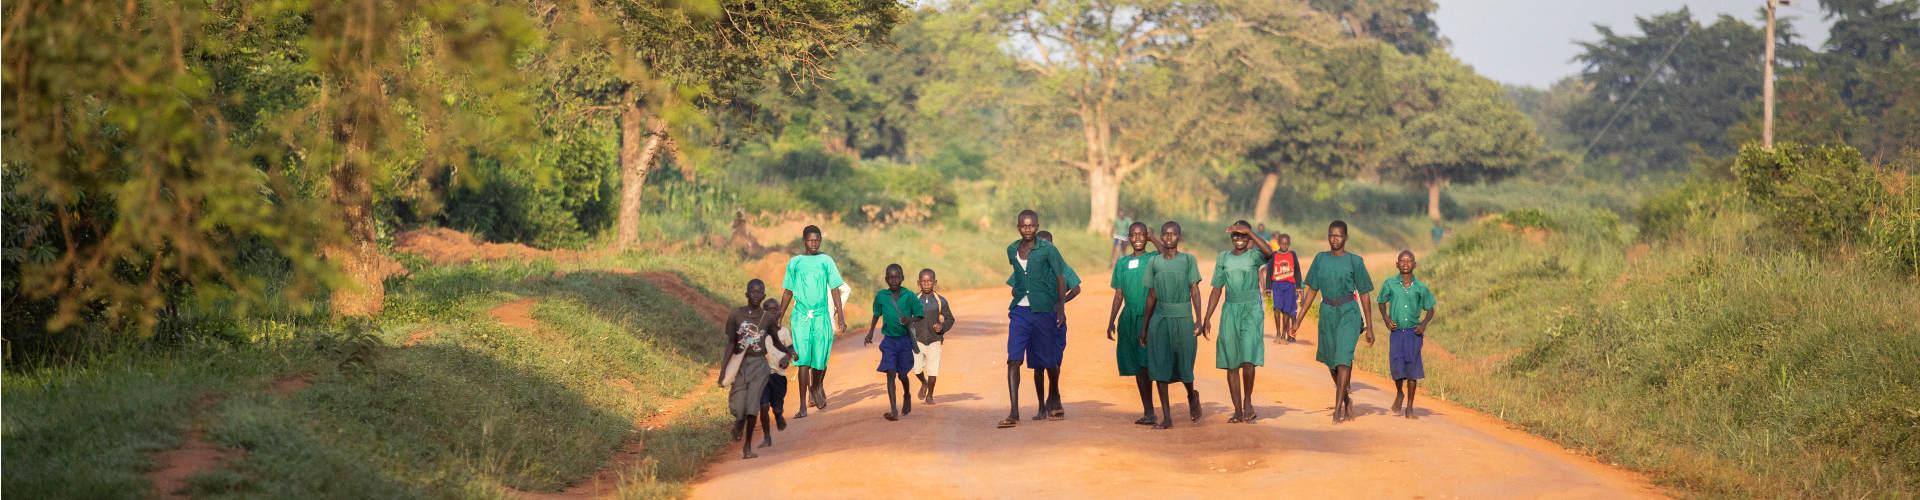 Eine Gruppe Jugendlicher geht auf einer Straße in Uganda